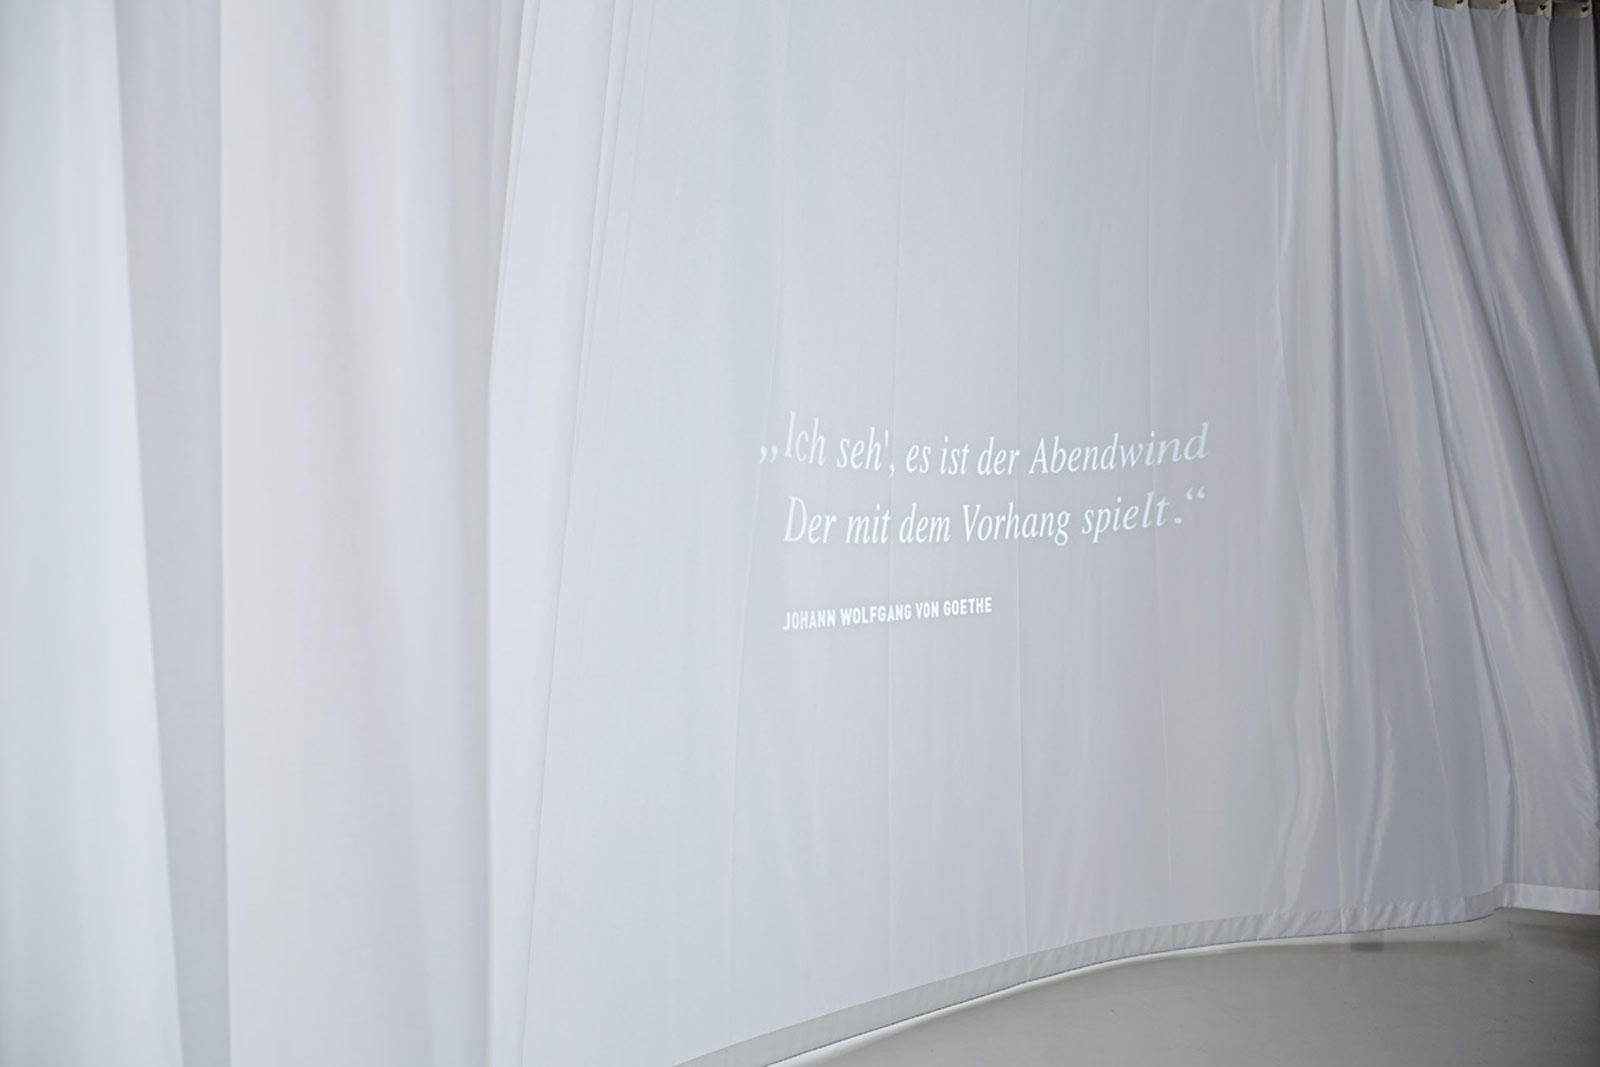 Das Referenzbild für Ausstellungsgestaltung aus der Sonderausstellung „Textile Architektur“ zeigt eine Medienstation mit ein Zitat.